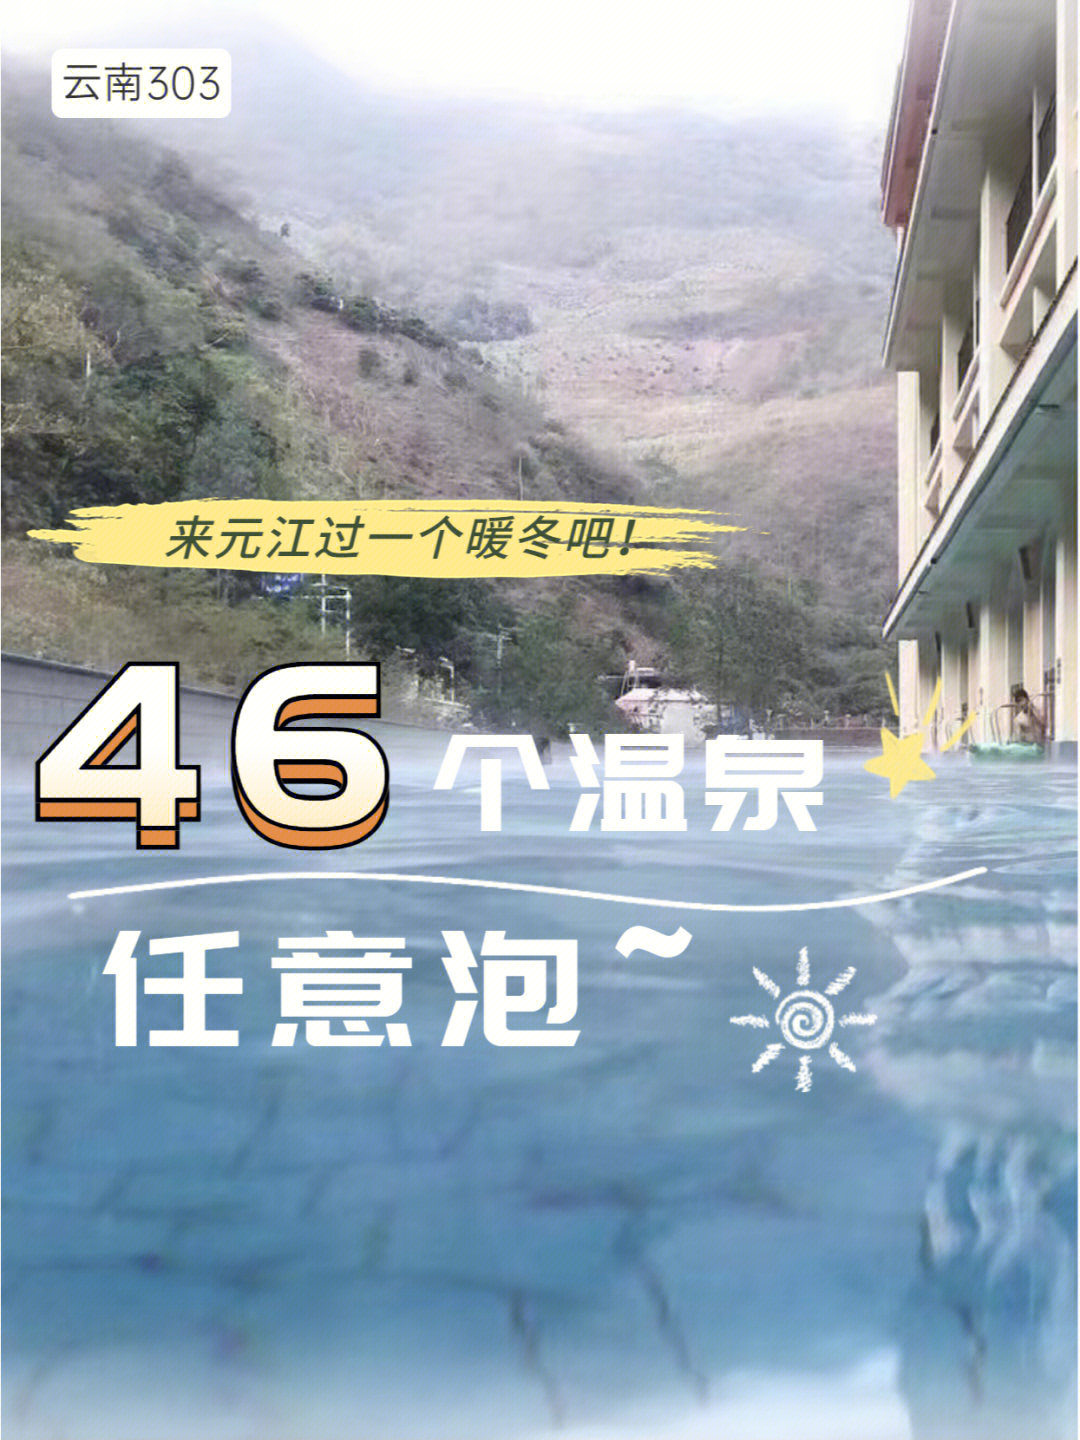 46个温泉任意泡78来元江过一个暖冬吧75